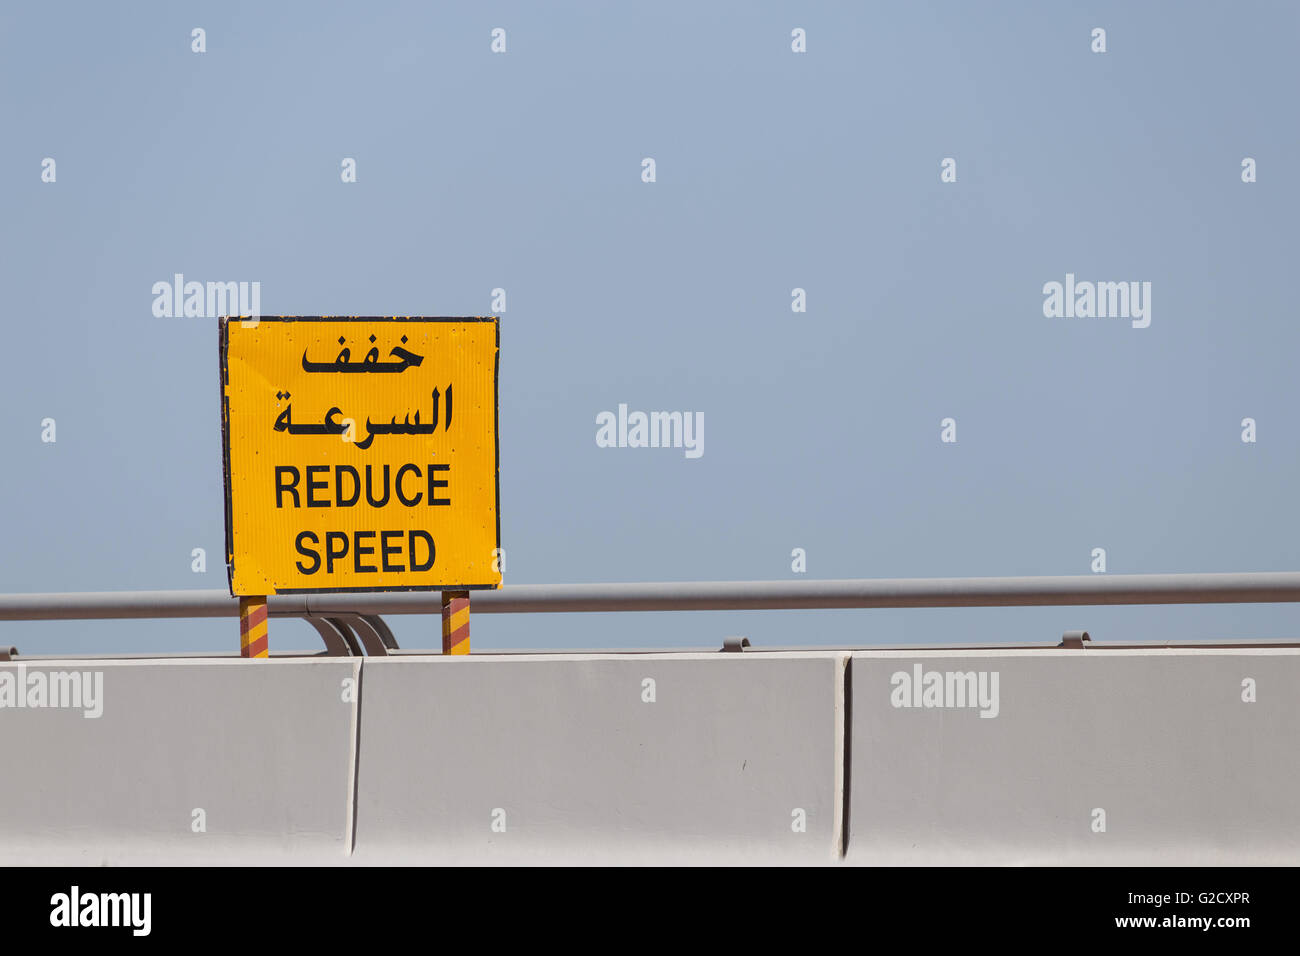 Cartello stradale ridurre la velocità in inglese e arabo Foto Stock